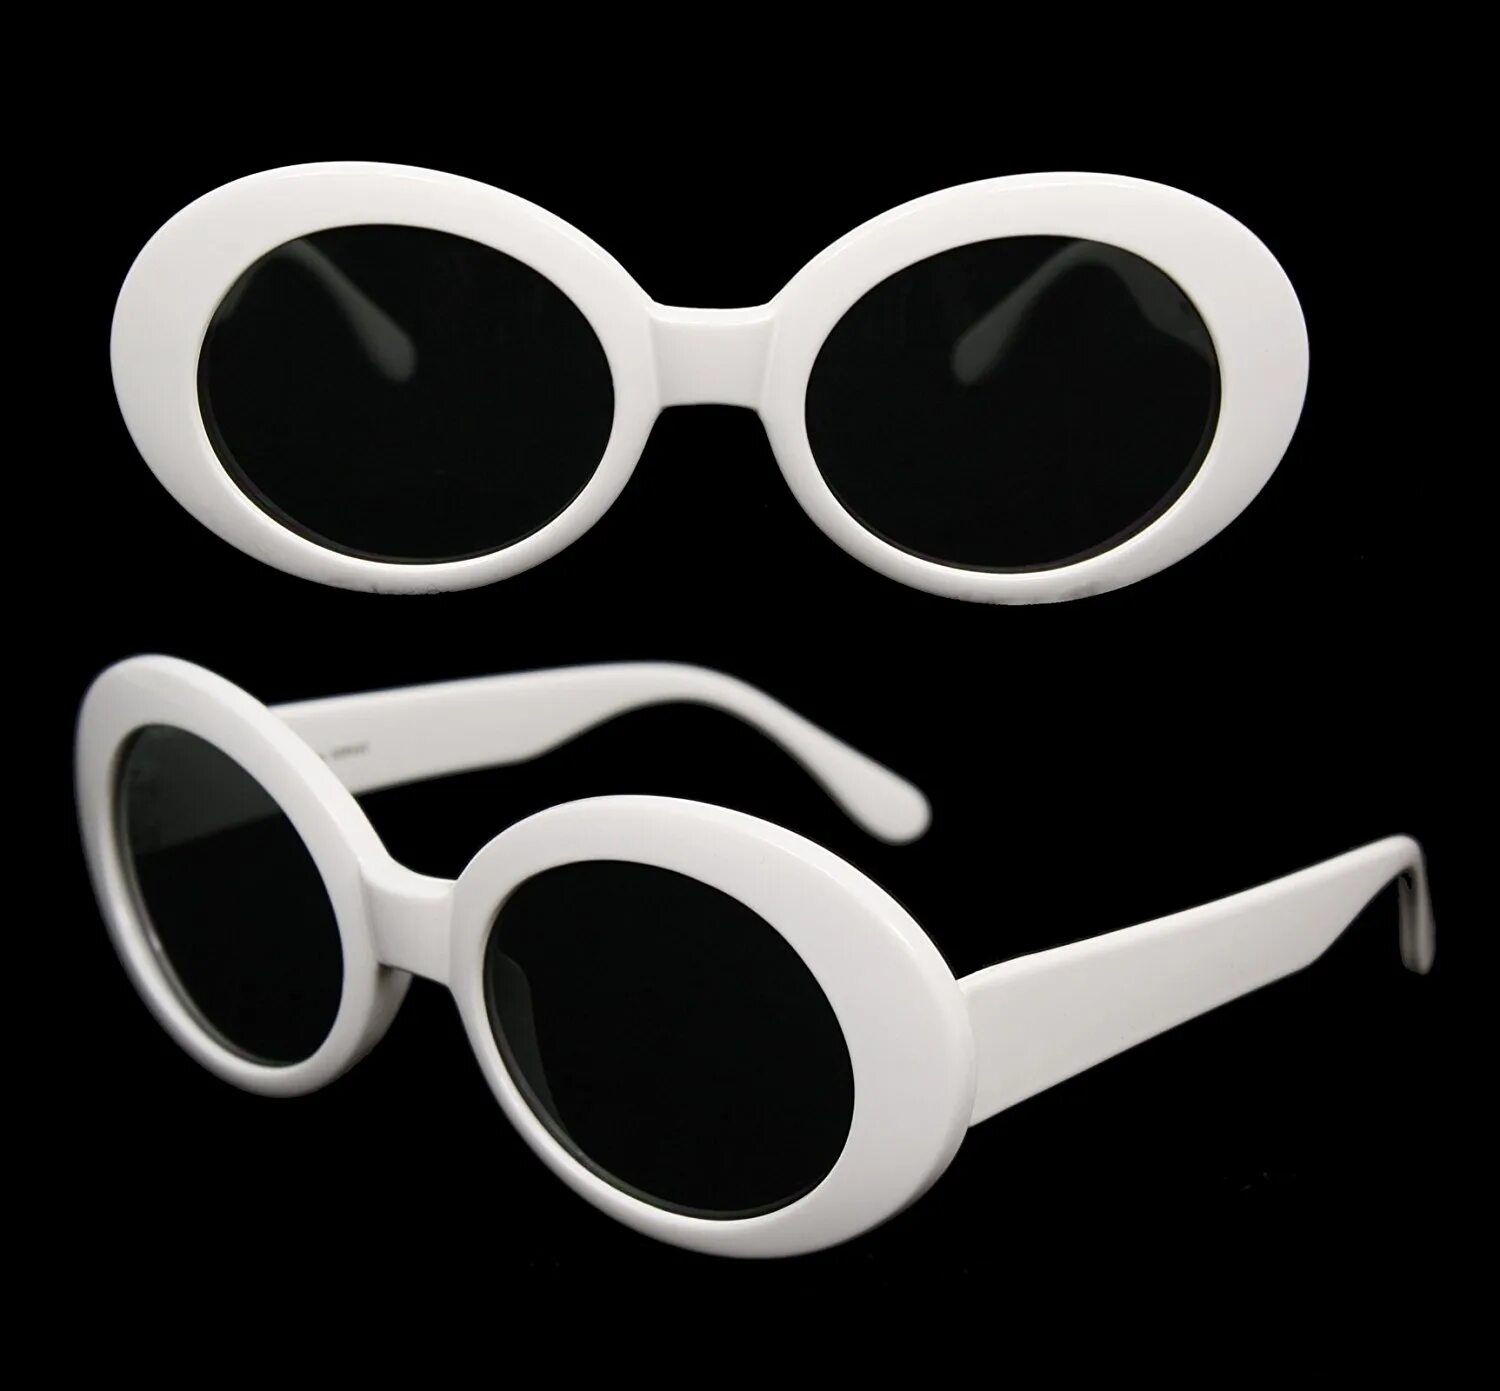 Купить такие очки. Очки Курта Кобейна. Очки лунатики, очки Курта Кобейна.. Clout очки Курта Кобейна. Белые очки Курта Кобейна.